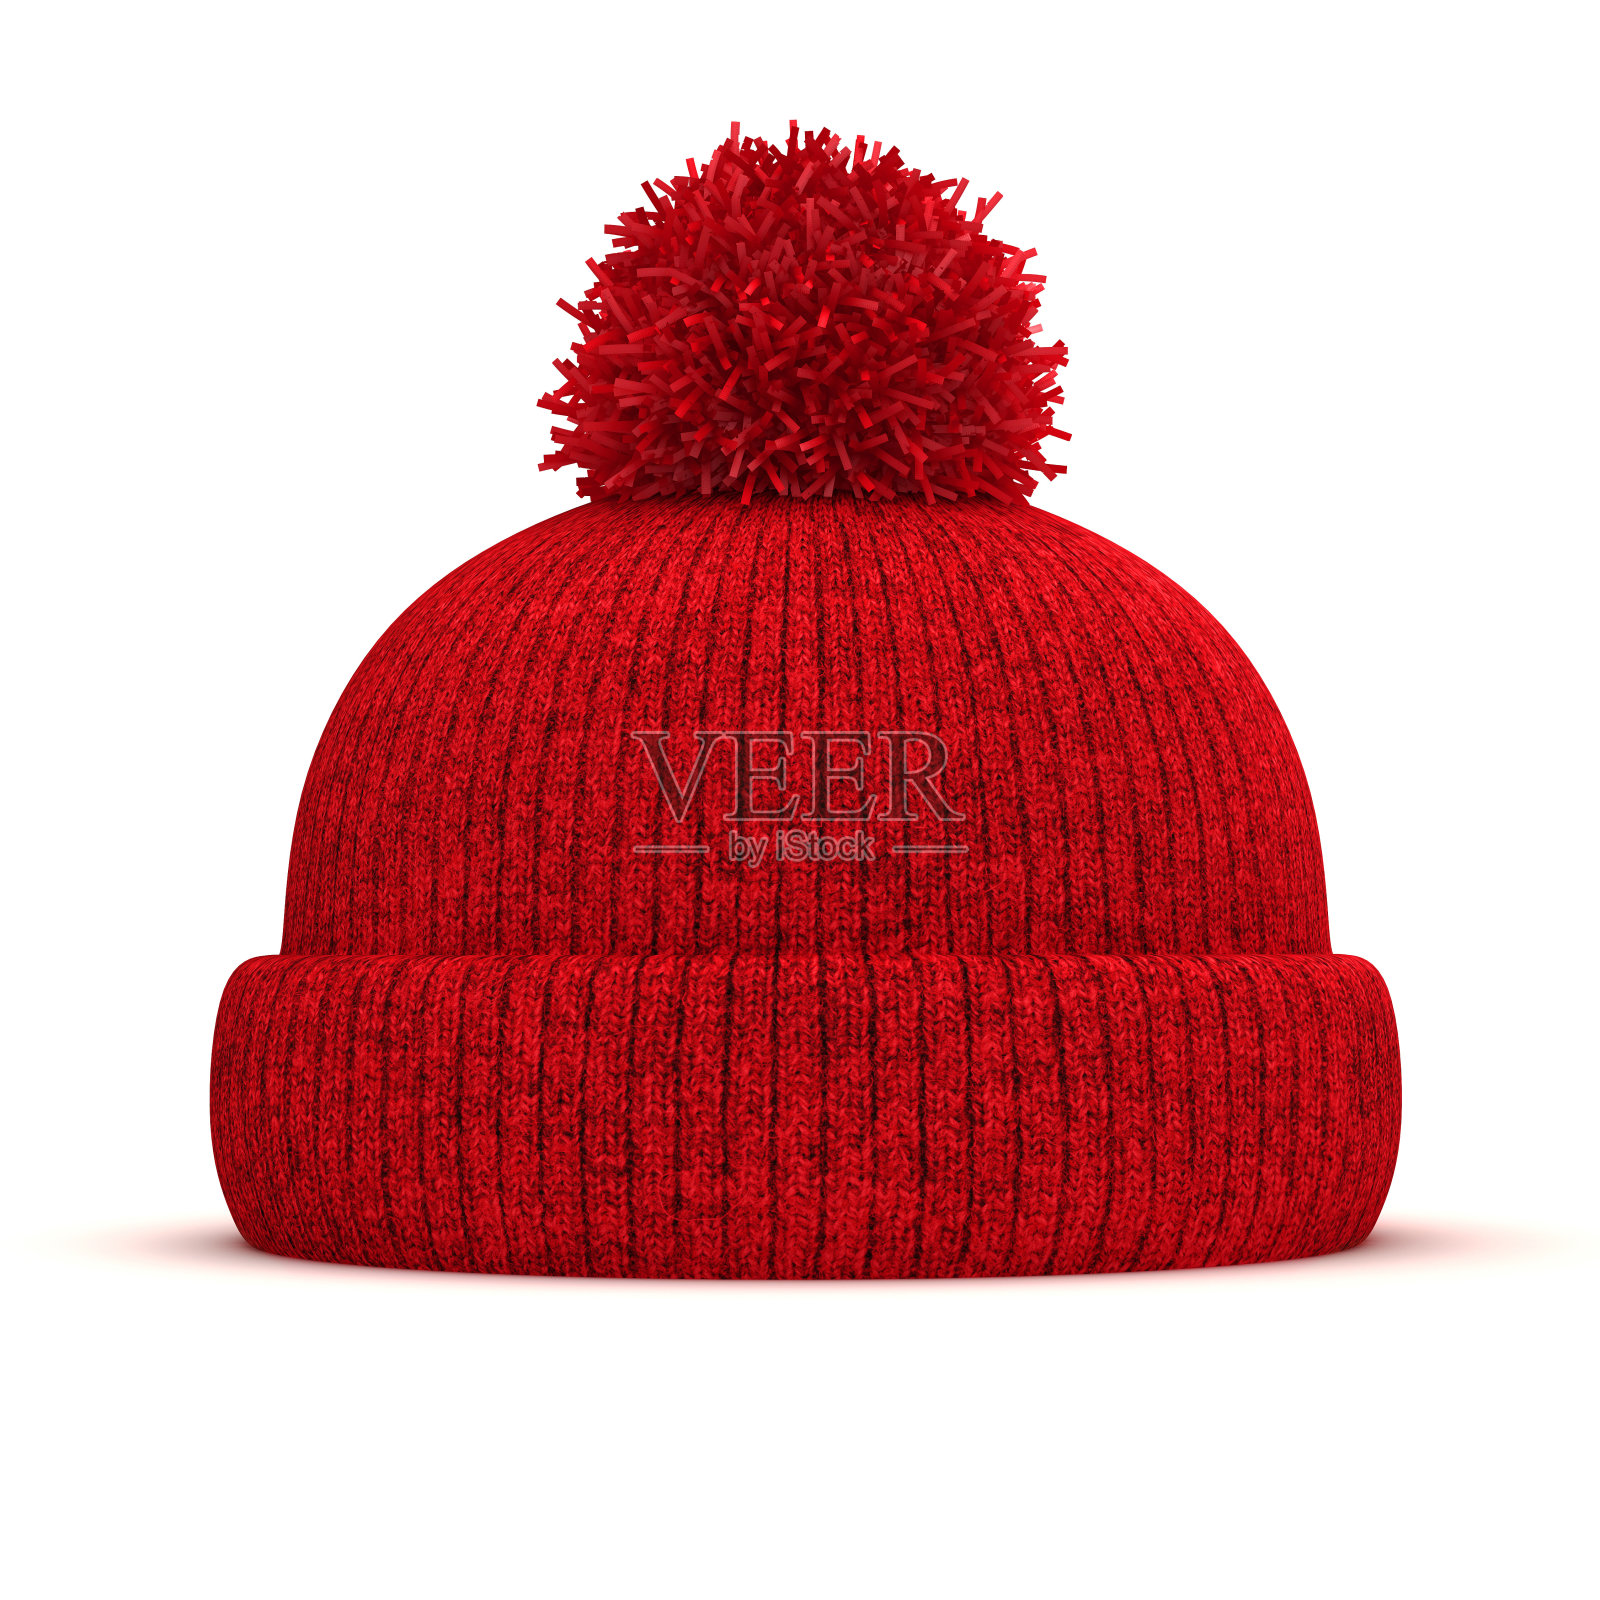 3D红色编织圆帽在白色的背景照片摄影图片